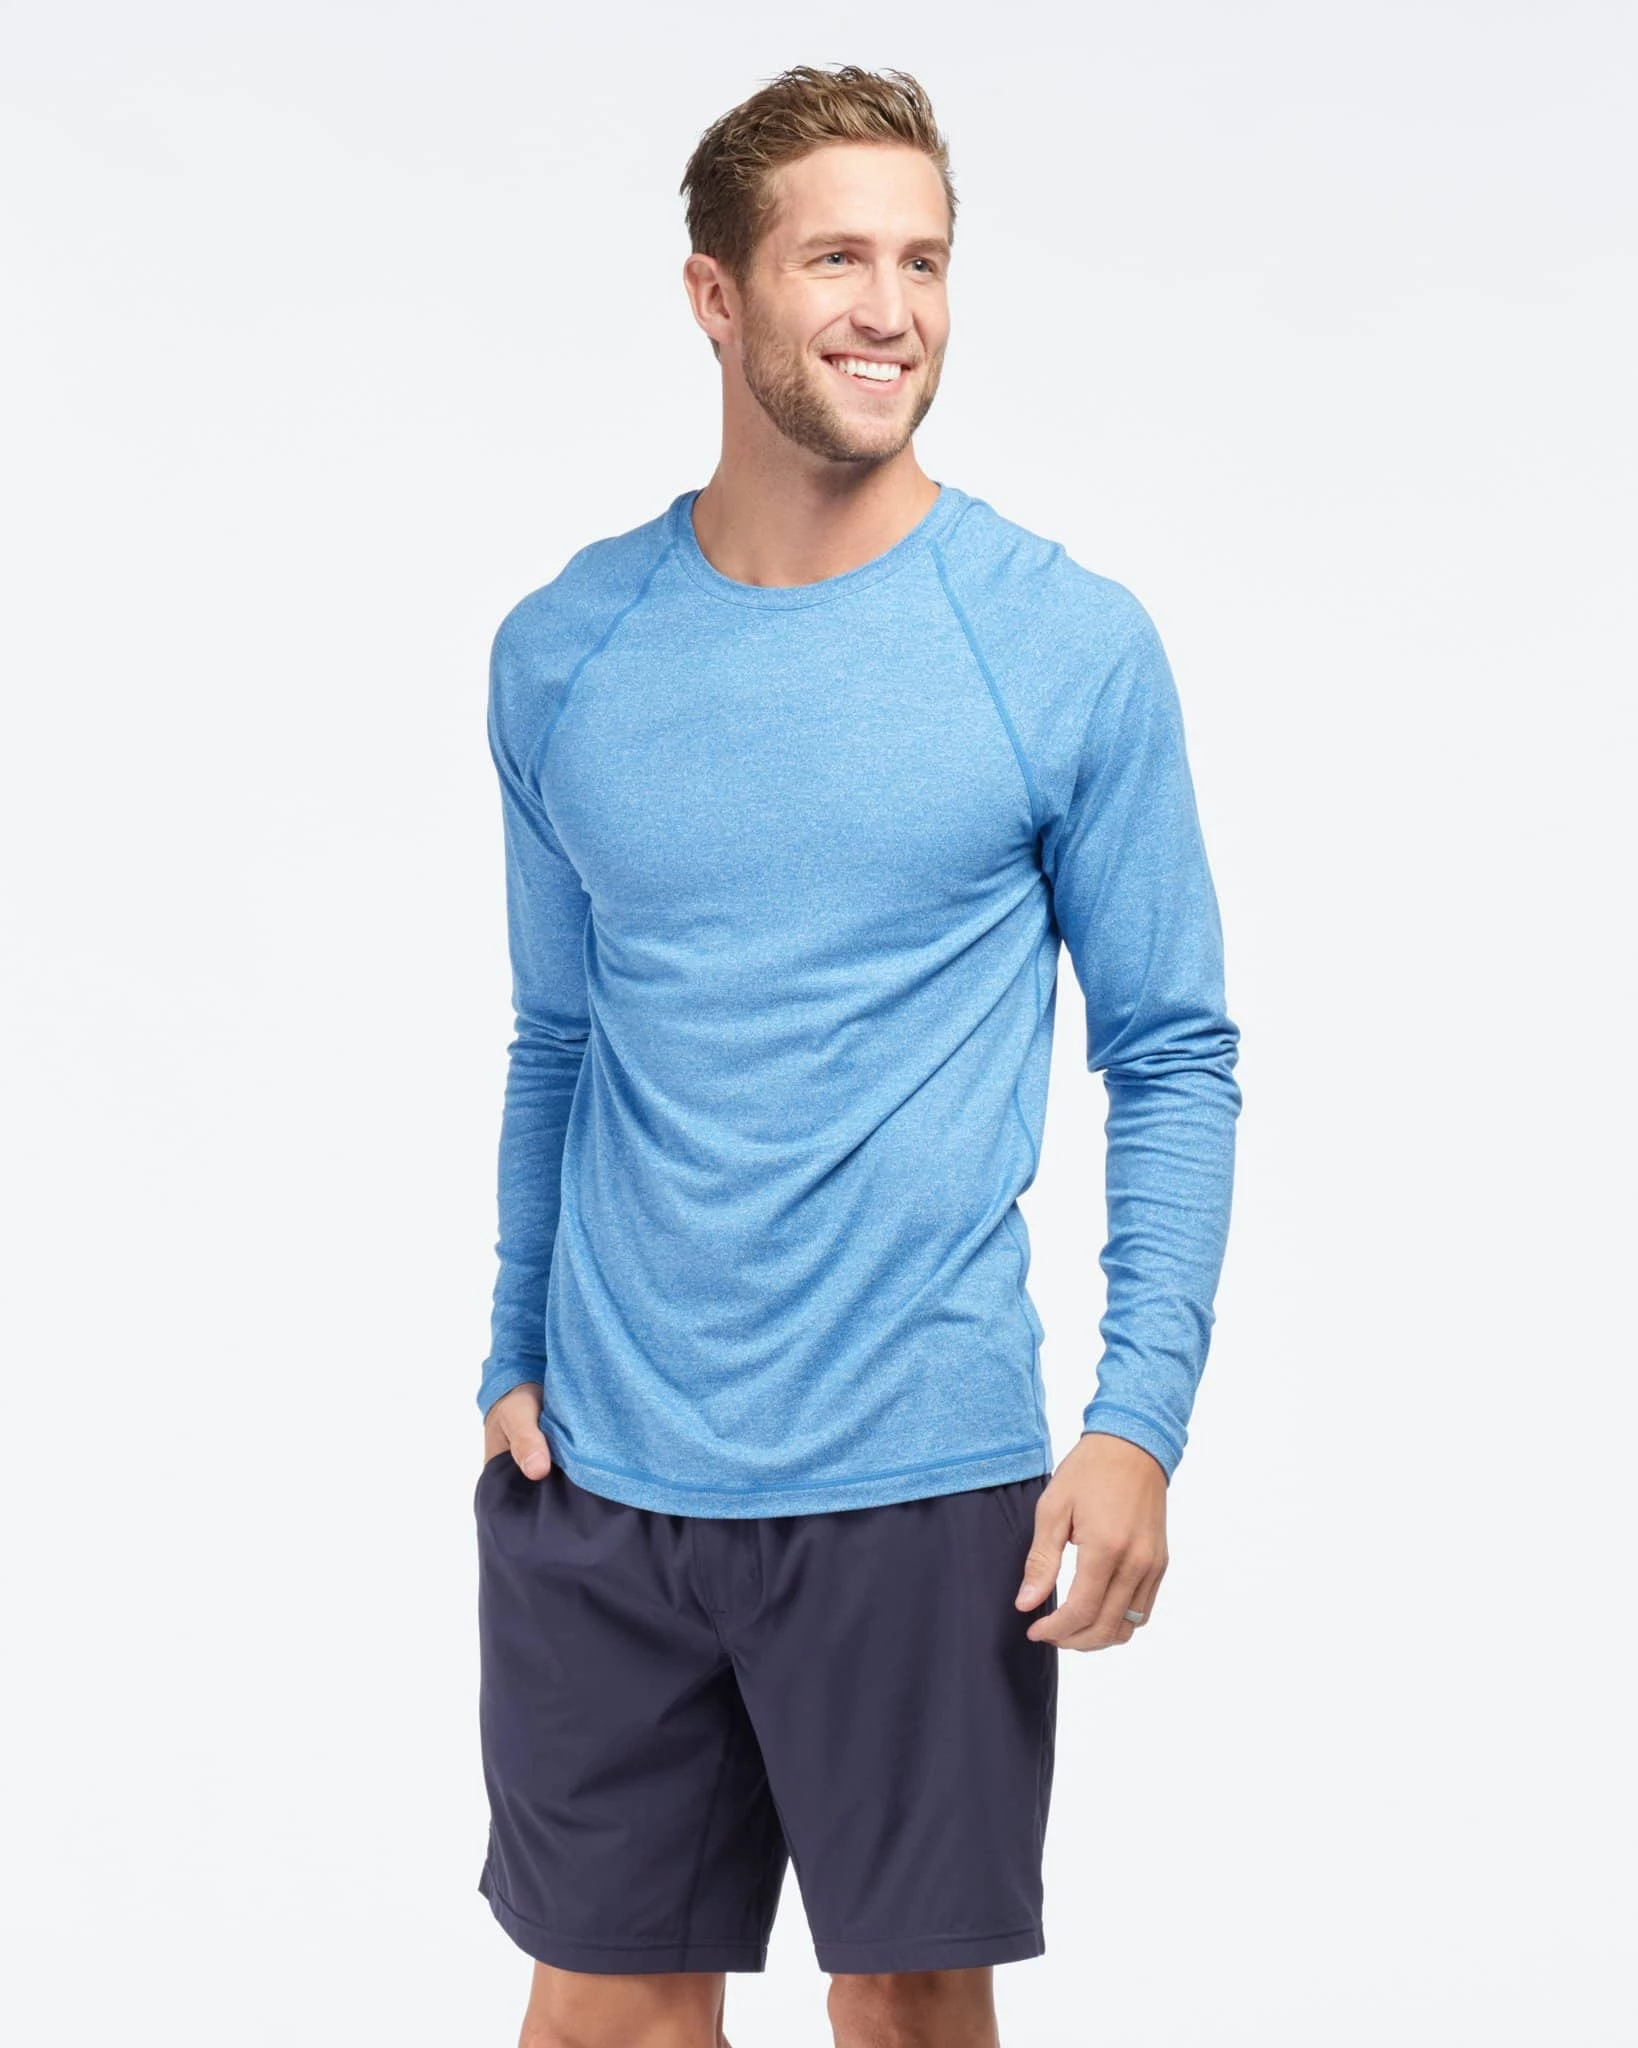 Athletic Long Sleeve Basic Shirt Men